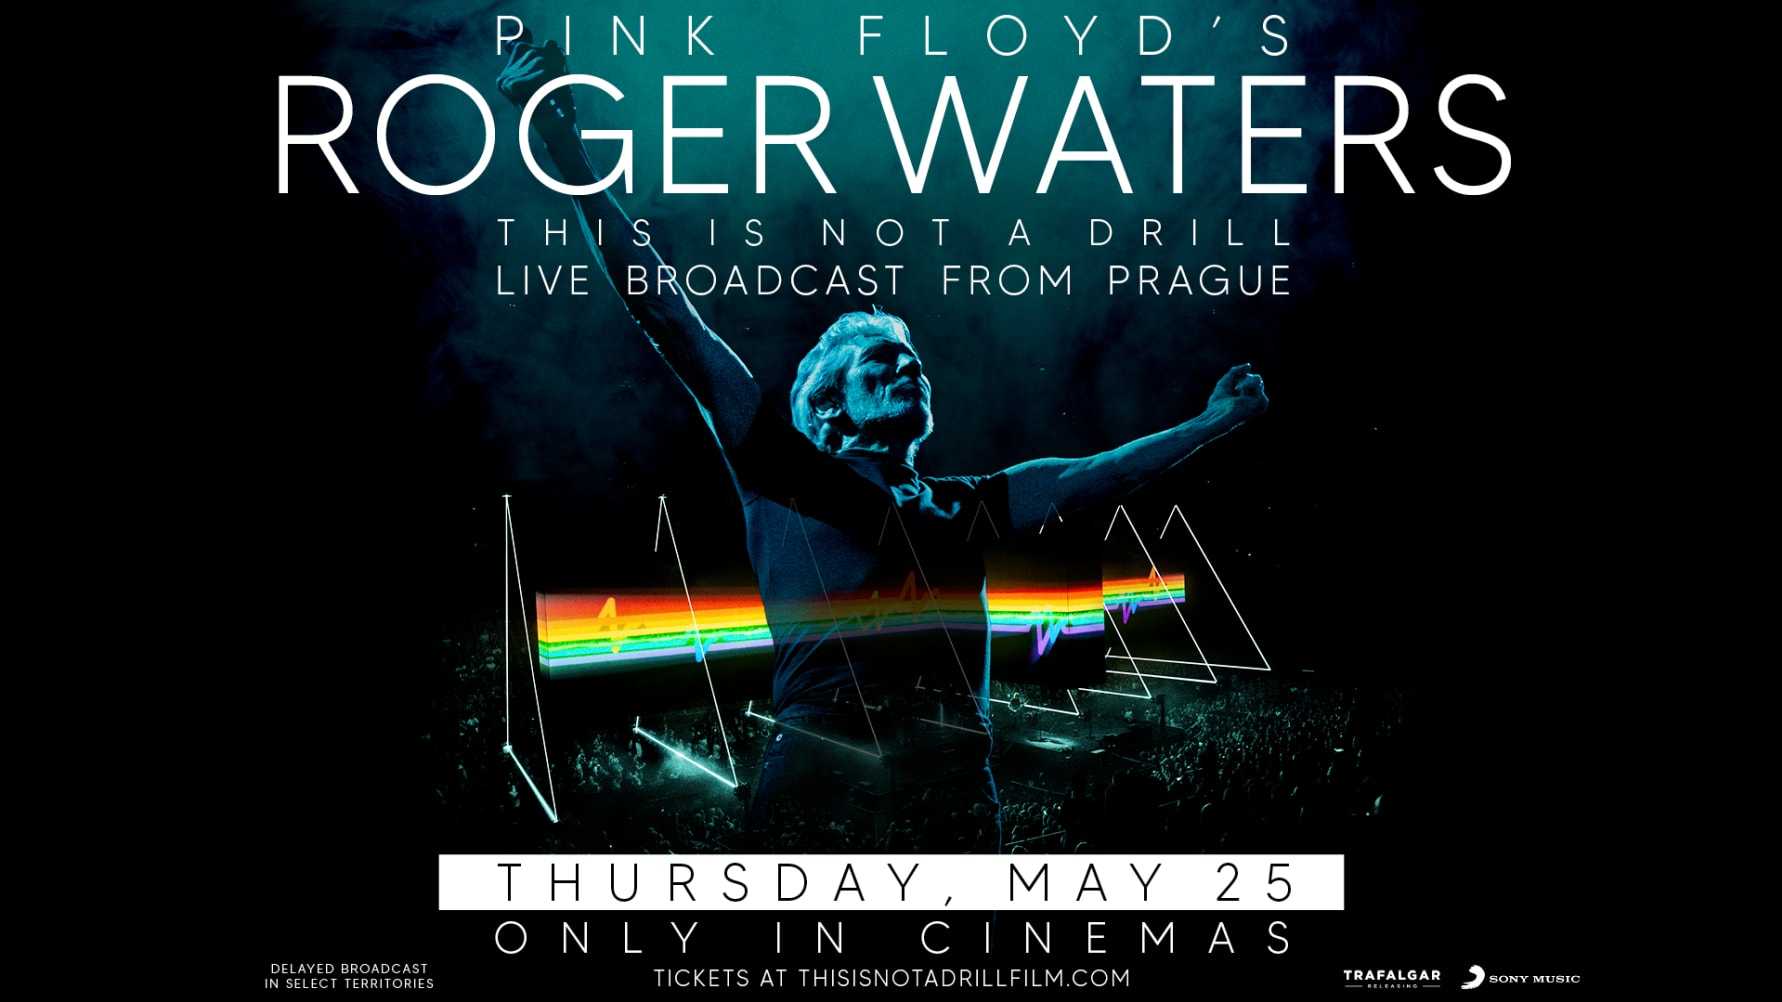 Roger Waters konsert livesänds på biografer världen över!